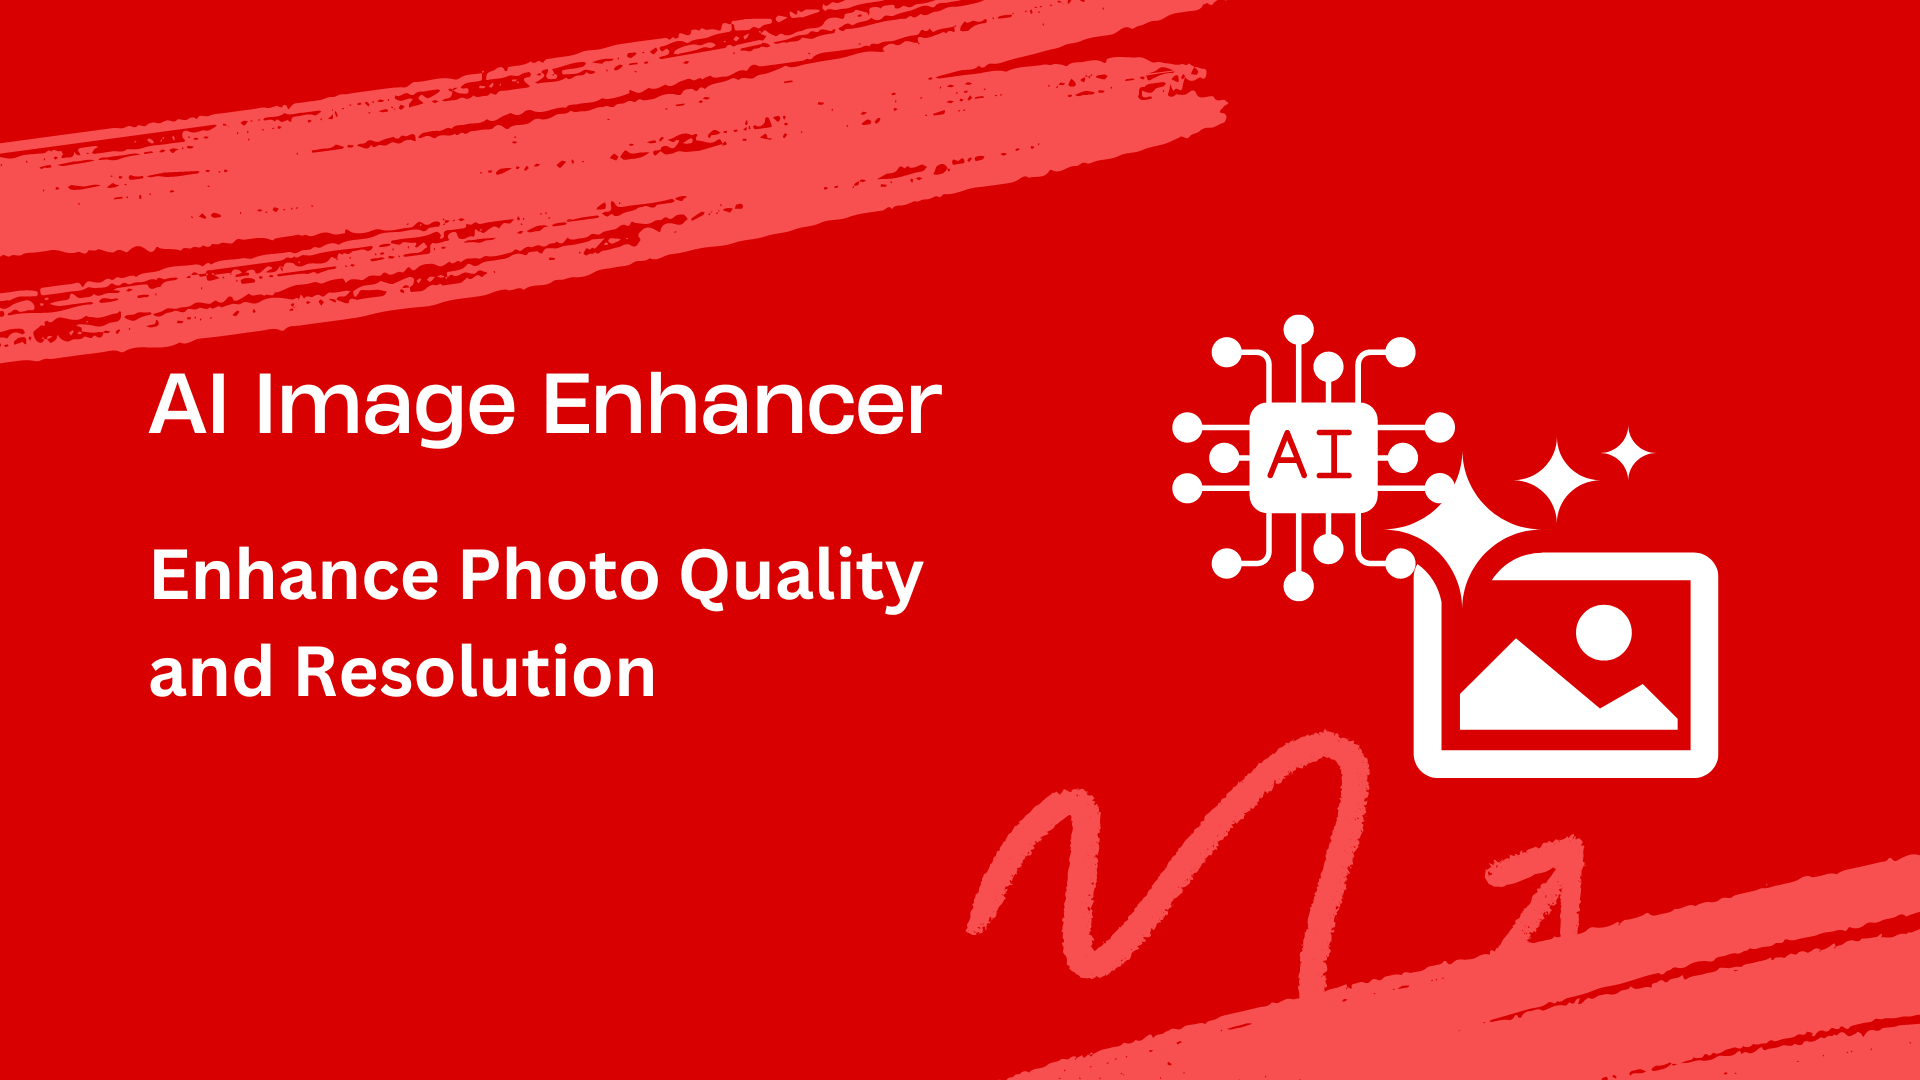 AI Image Enhancer Enhance Photo Quality and Resolution